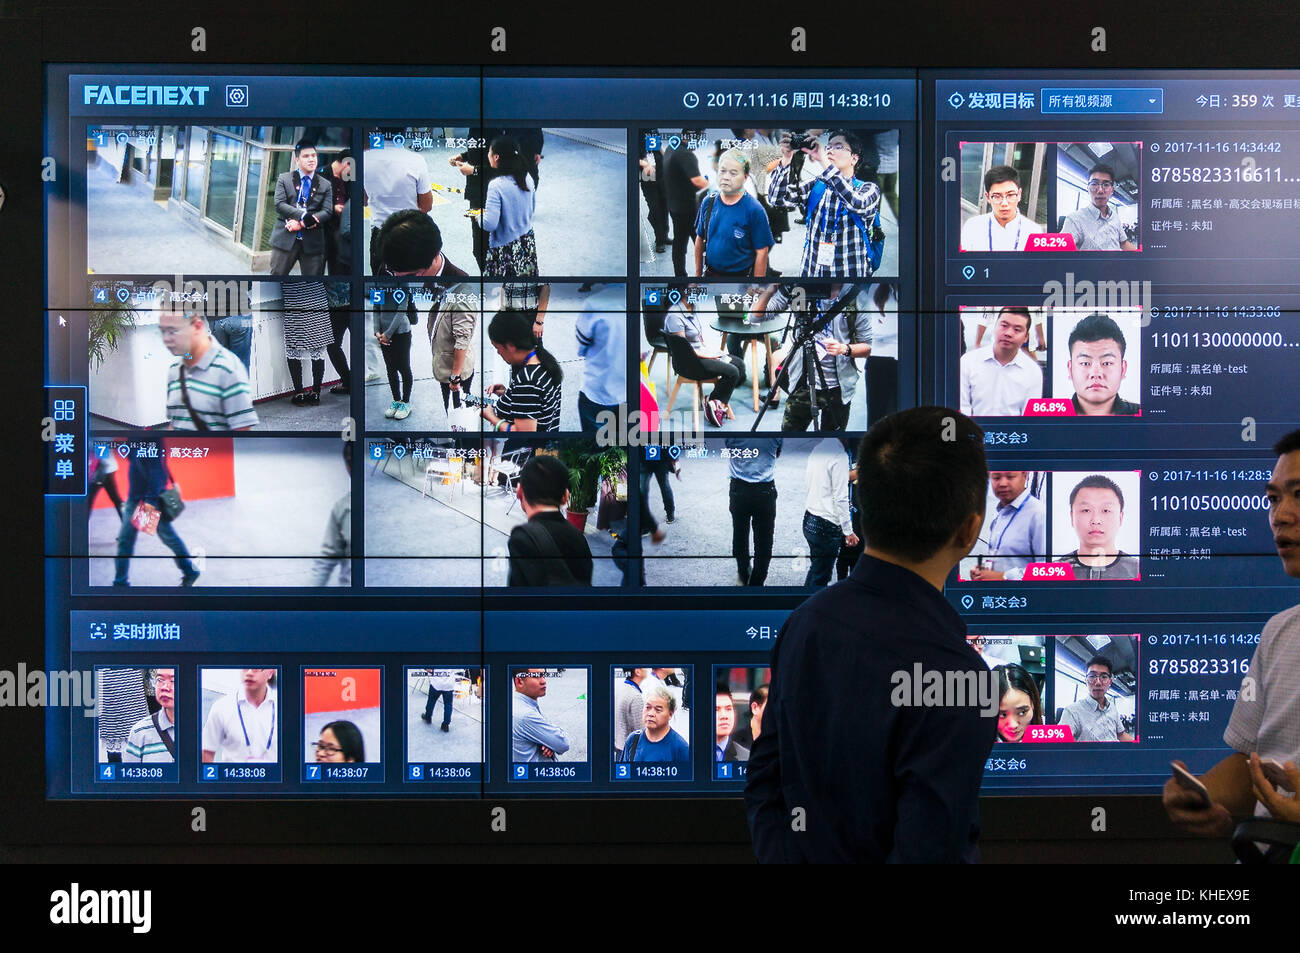 La technologie de surveillance de la reconnaissance des visages chez china hi-tech Fair à Shenzhen, connu sous le nom de "silicon valley" de la Chine, Shenzhen, Chine. Banque D'Images